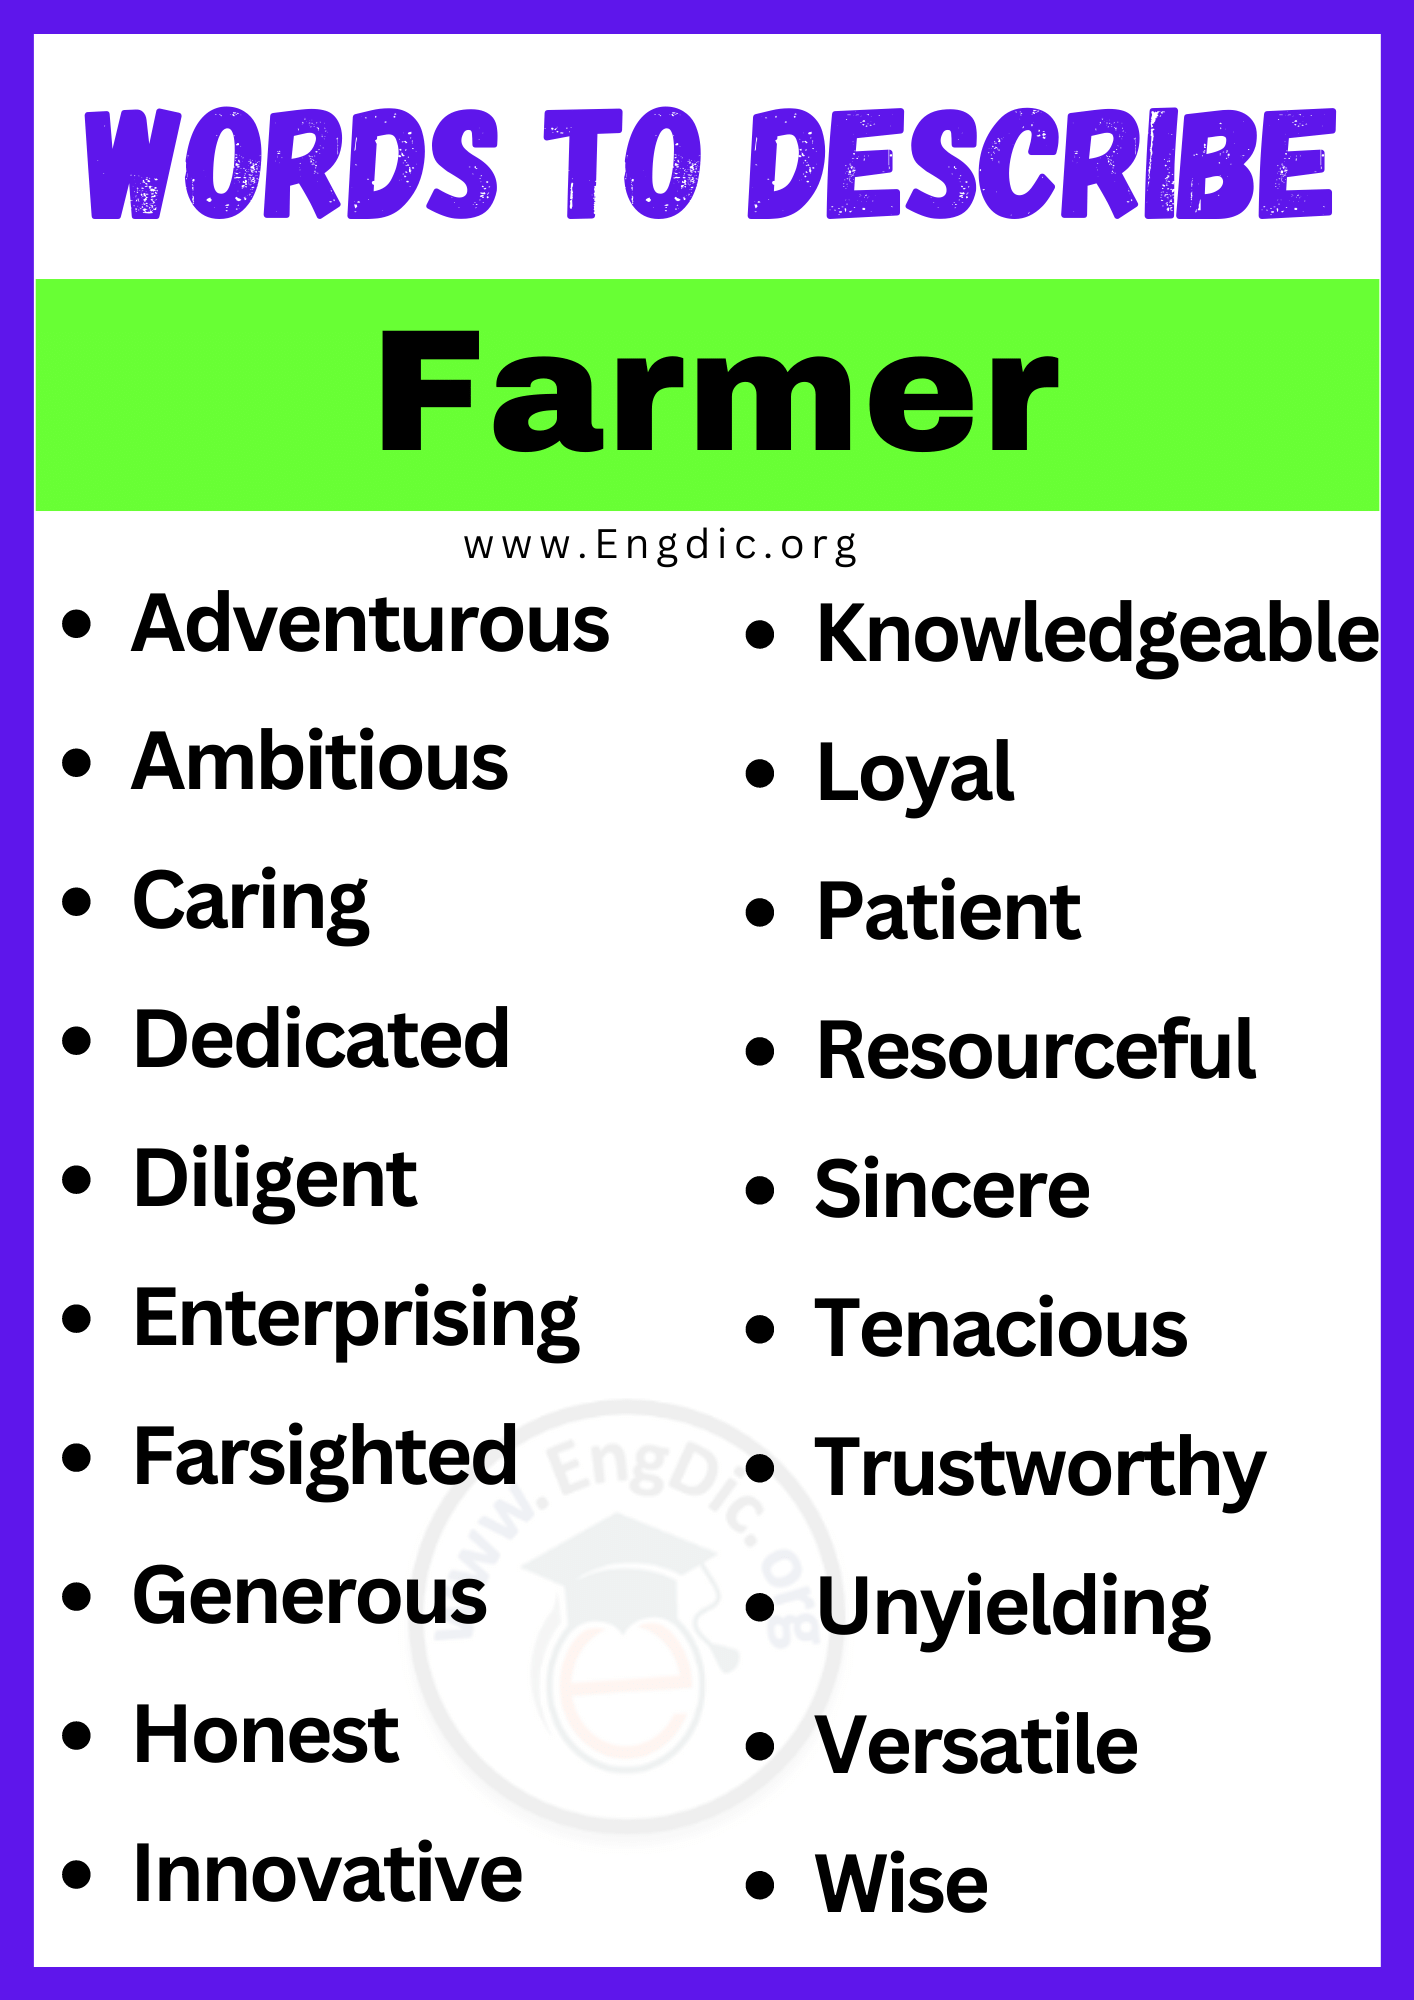 Words to Describe Farmer